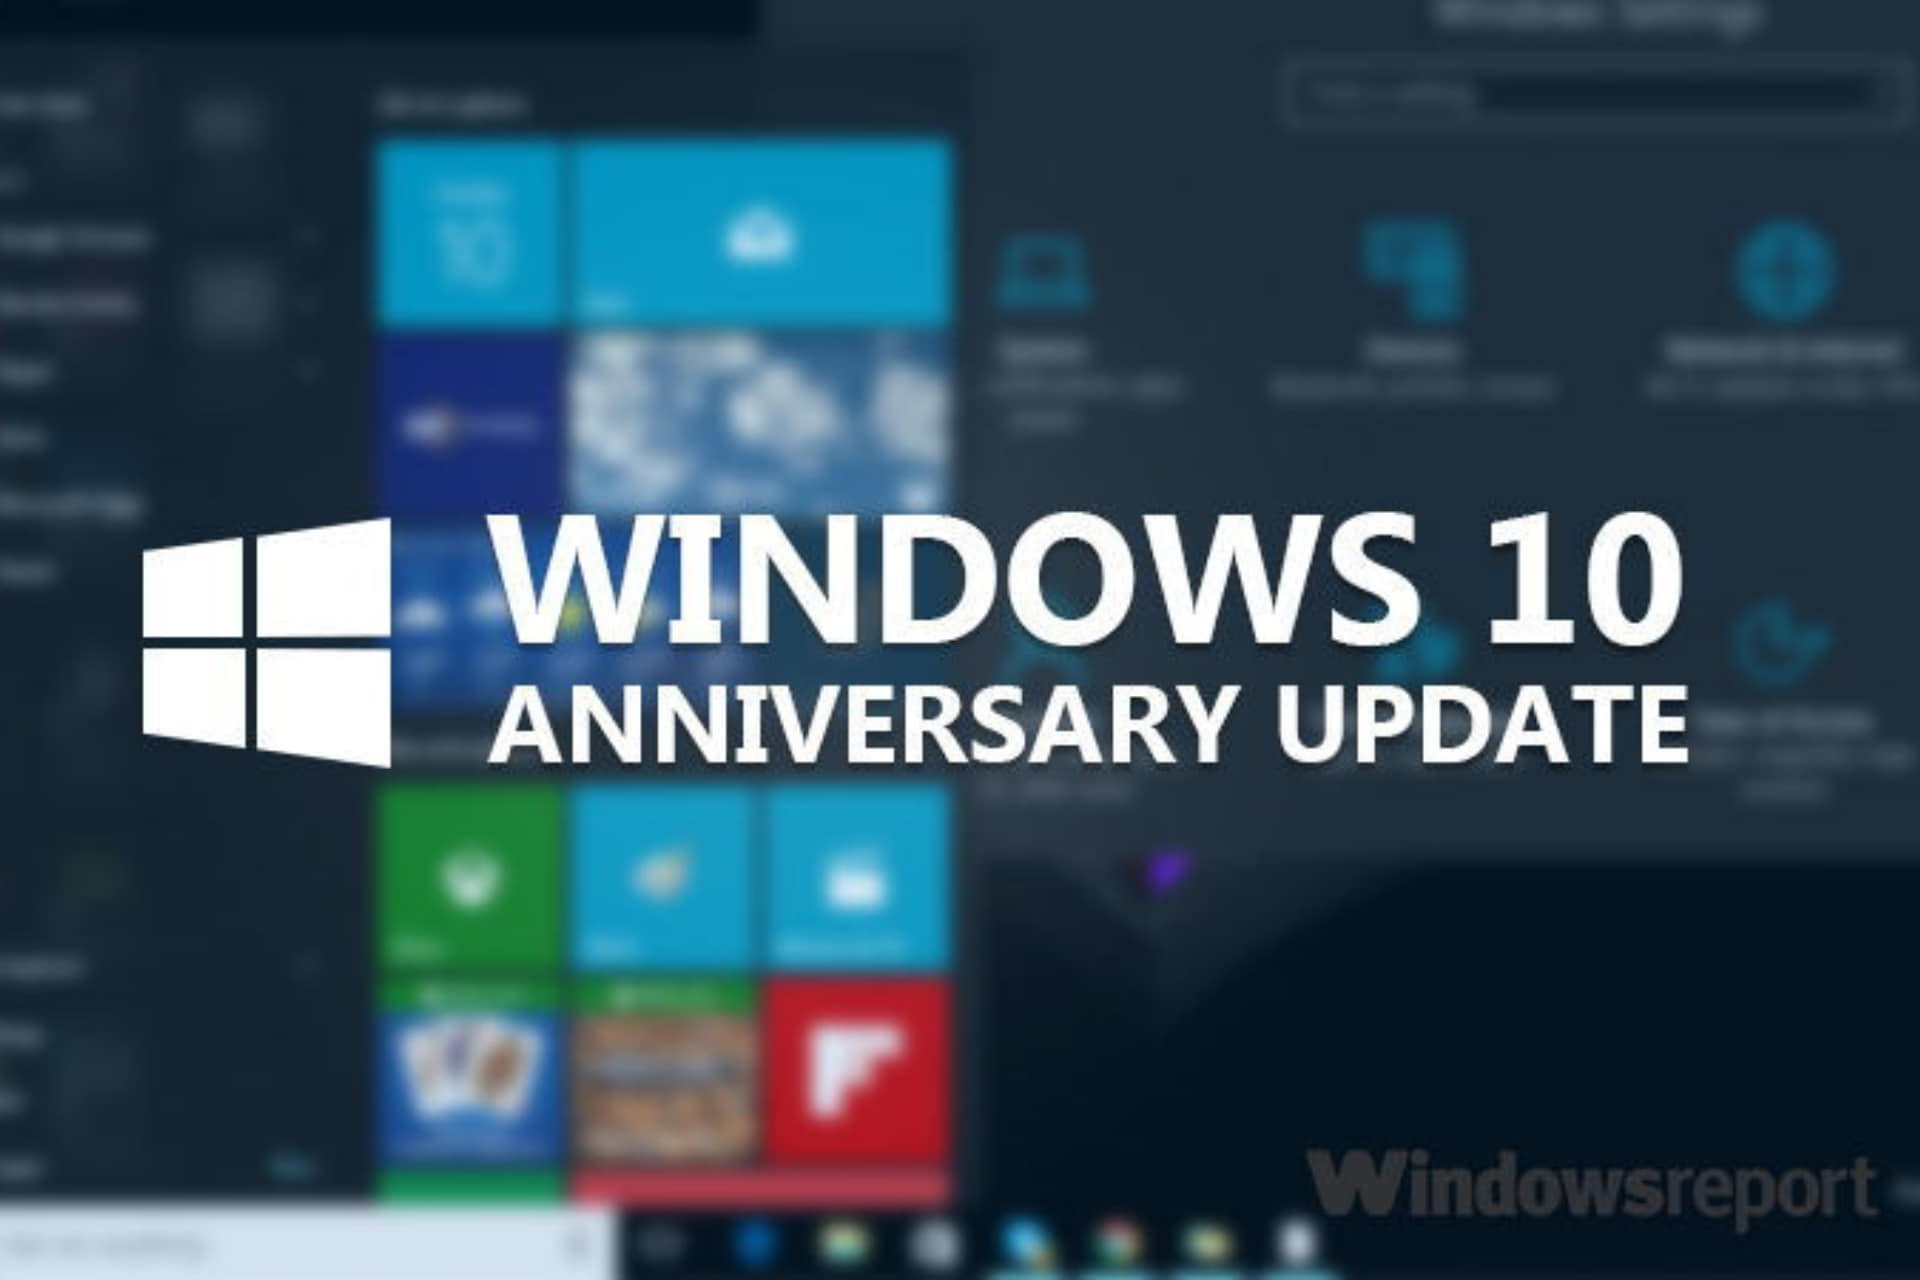 How to Uninstall the Windows 10 Anniversary Update